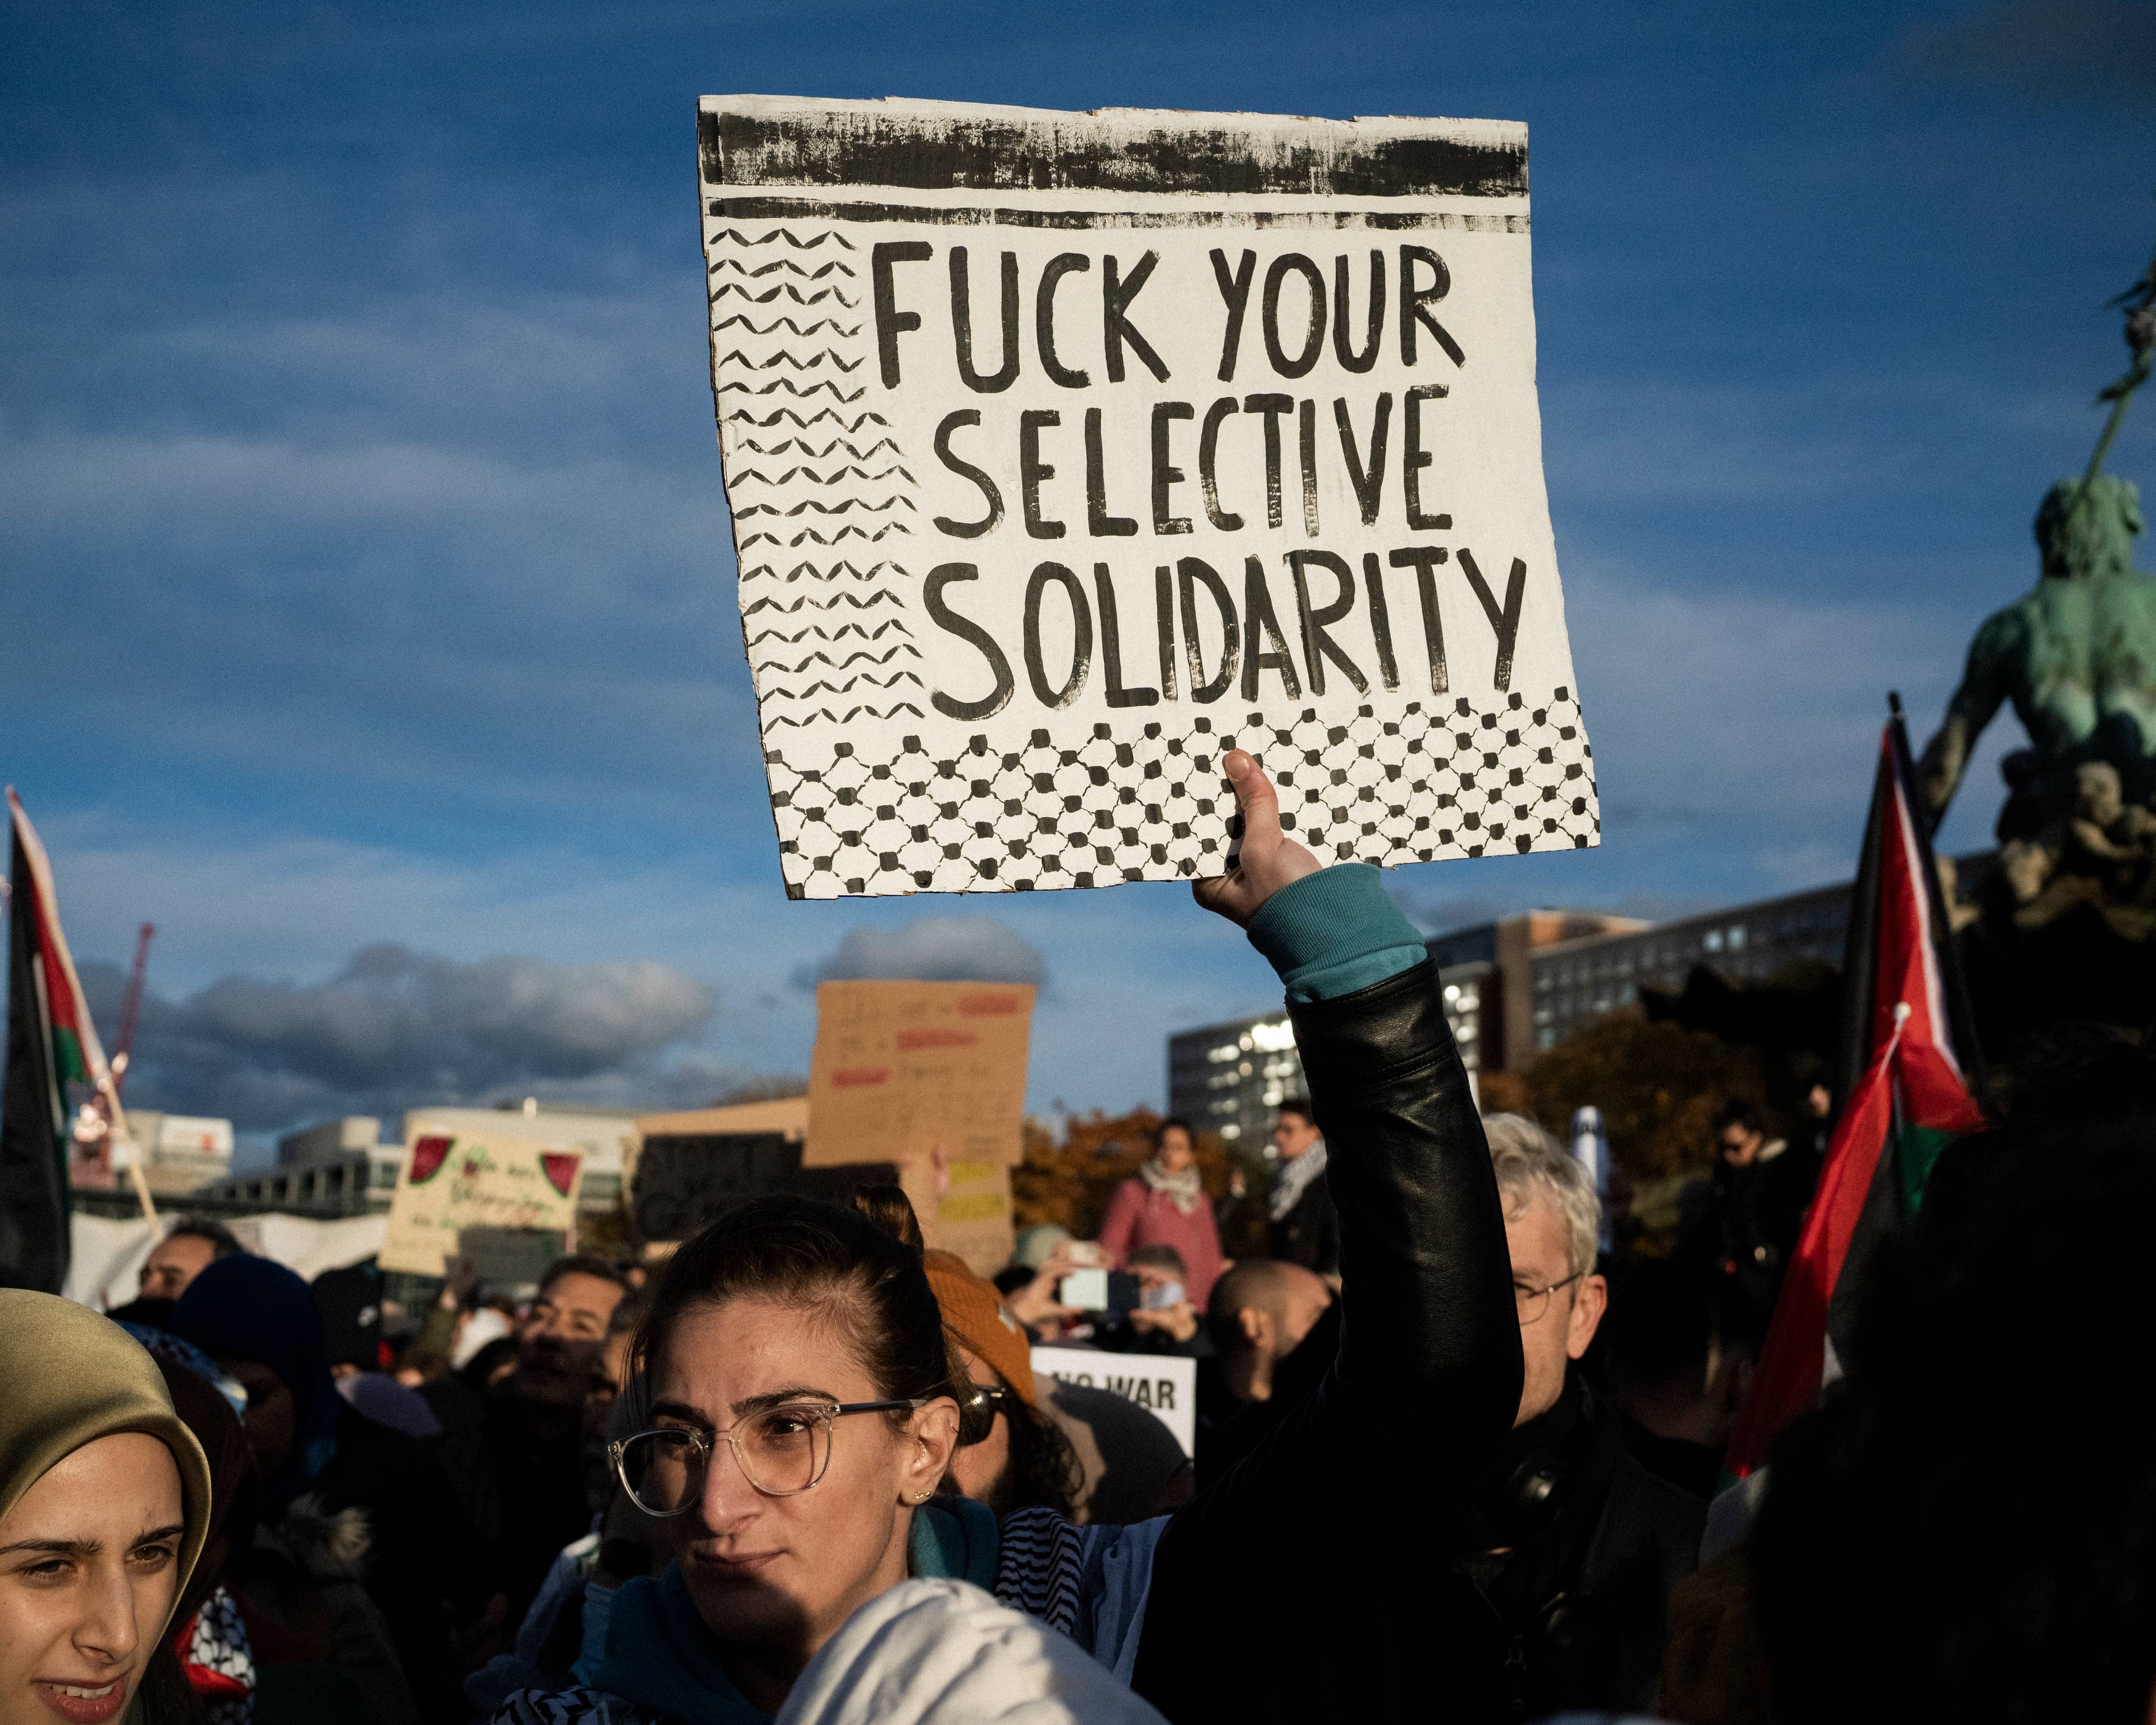 ktoś w tłumie unosi czarno-biały baner z napisem "Fuck your selektive solidarity"